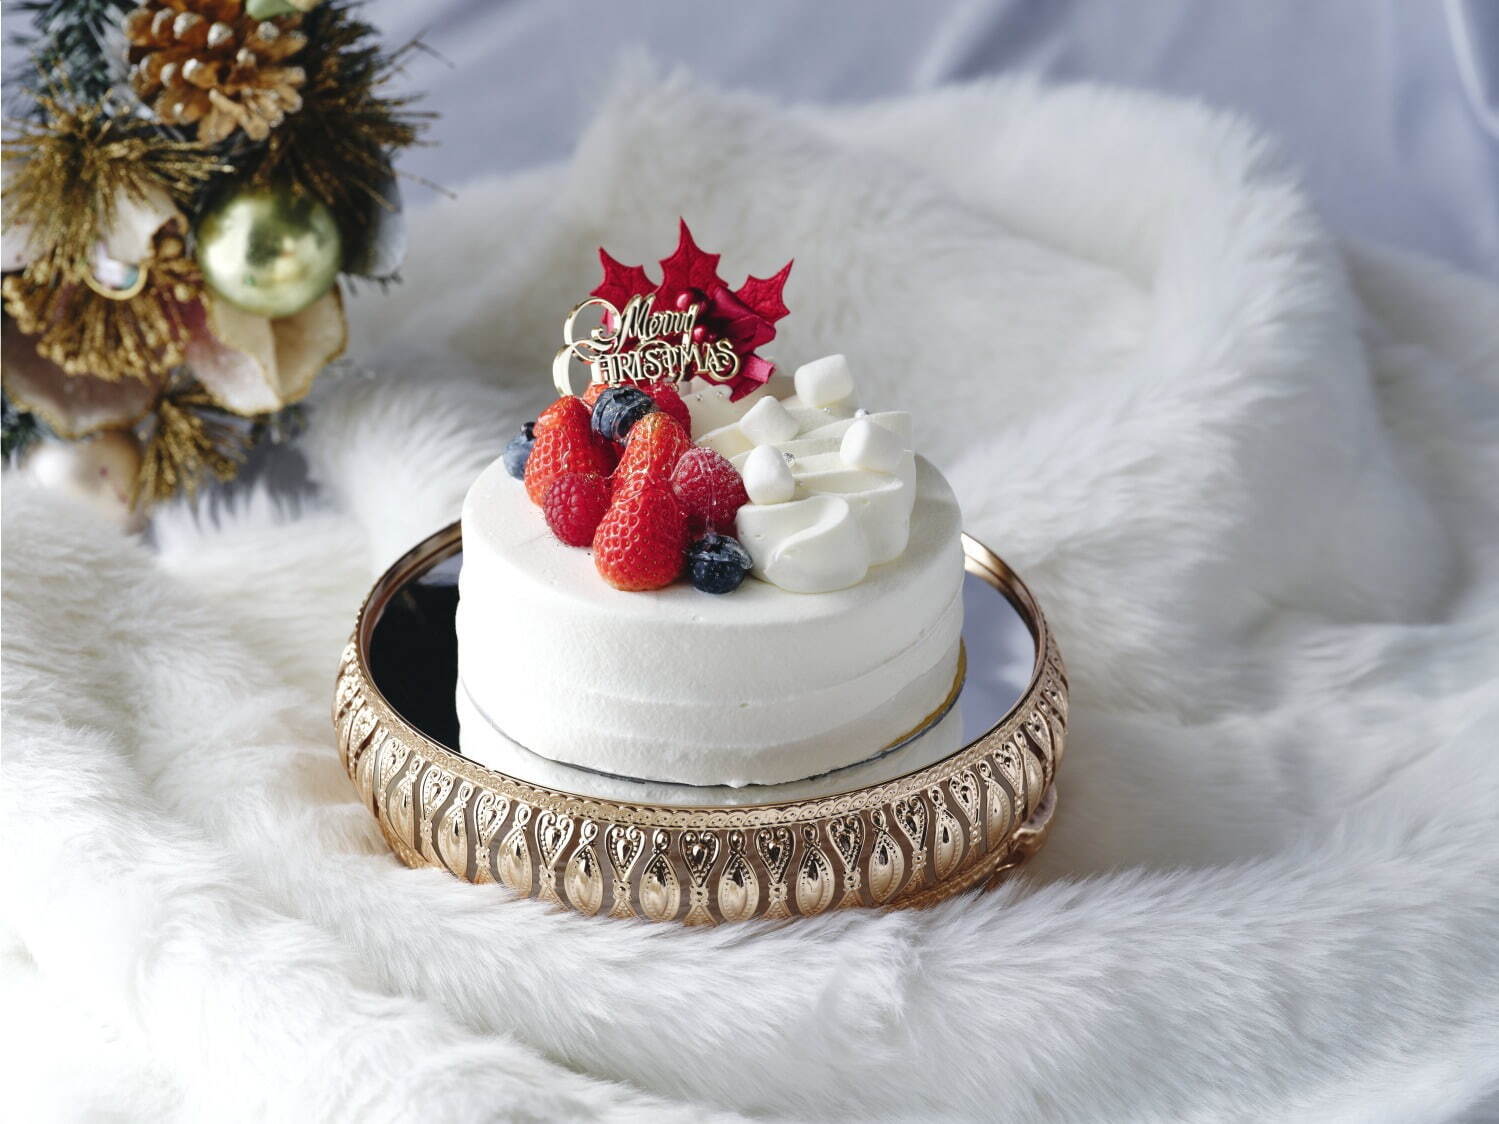 クリスマスショートケーキ S 2,800円(直径約12㎝、限定50台)
クリスマスショートケーキ L 4,500円(直径約16㎝、限定50台)